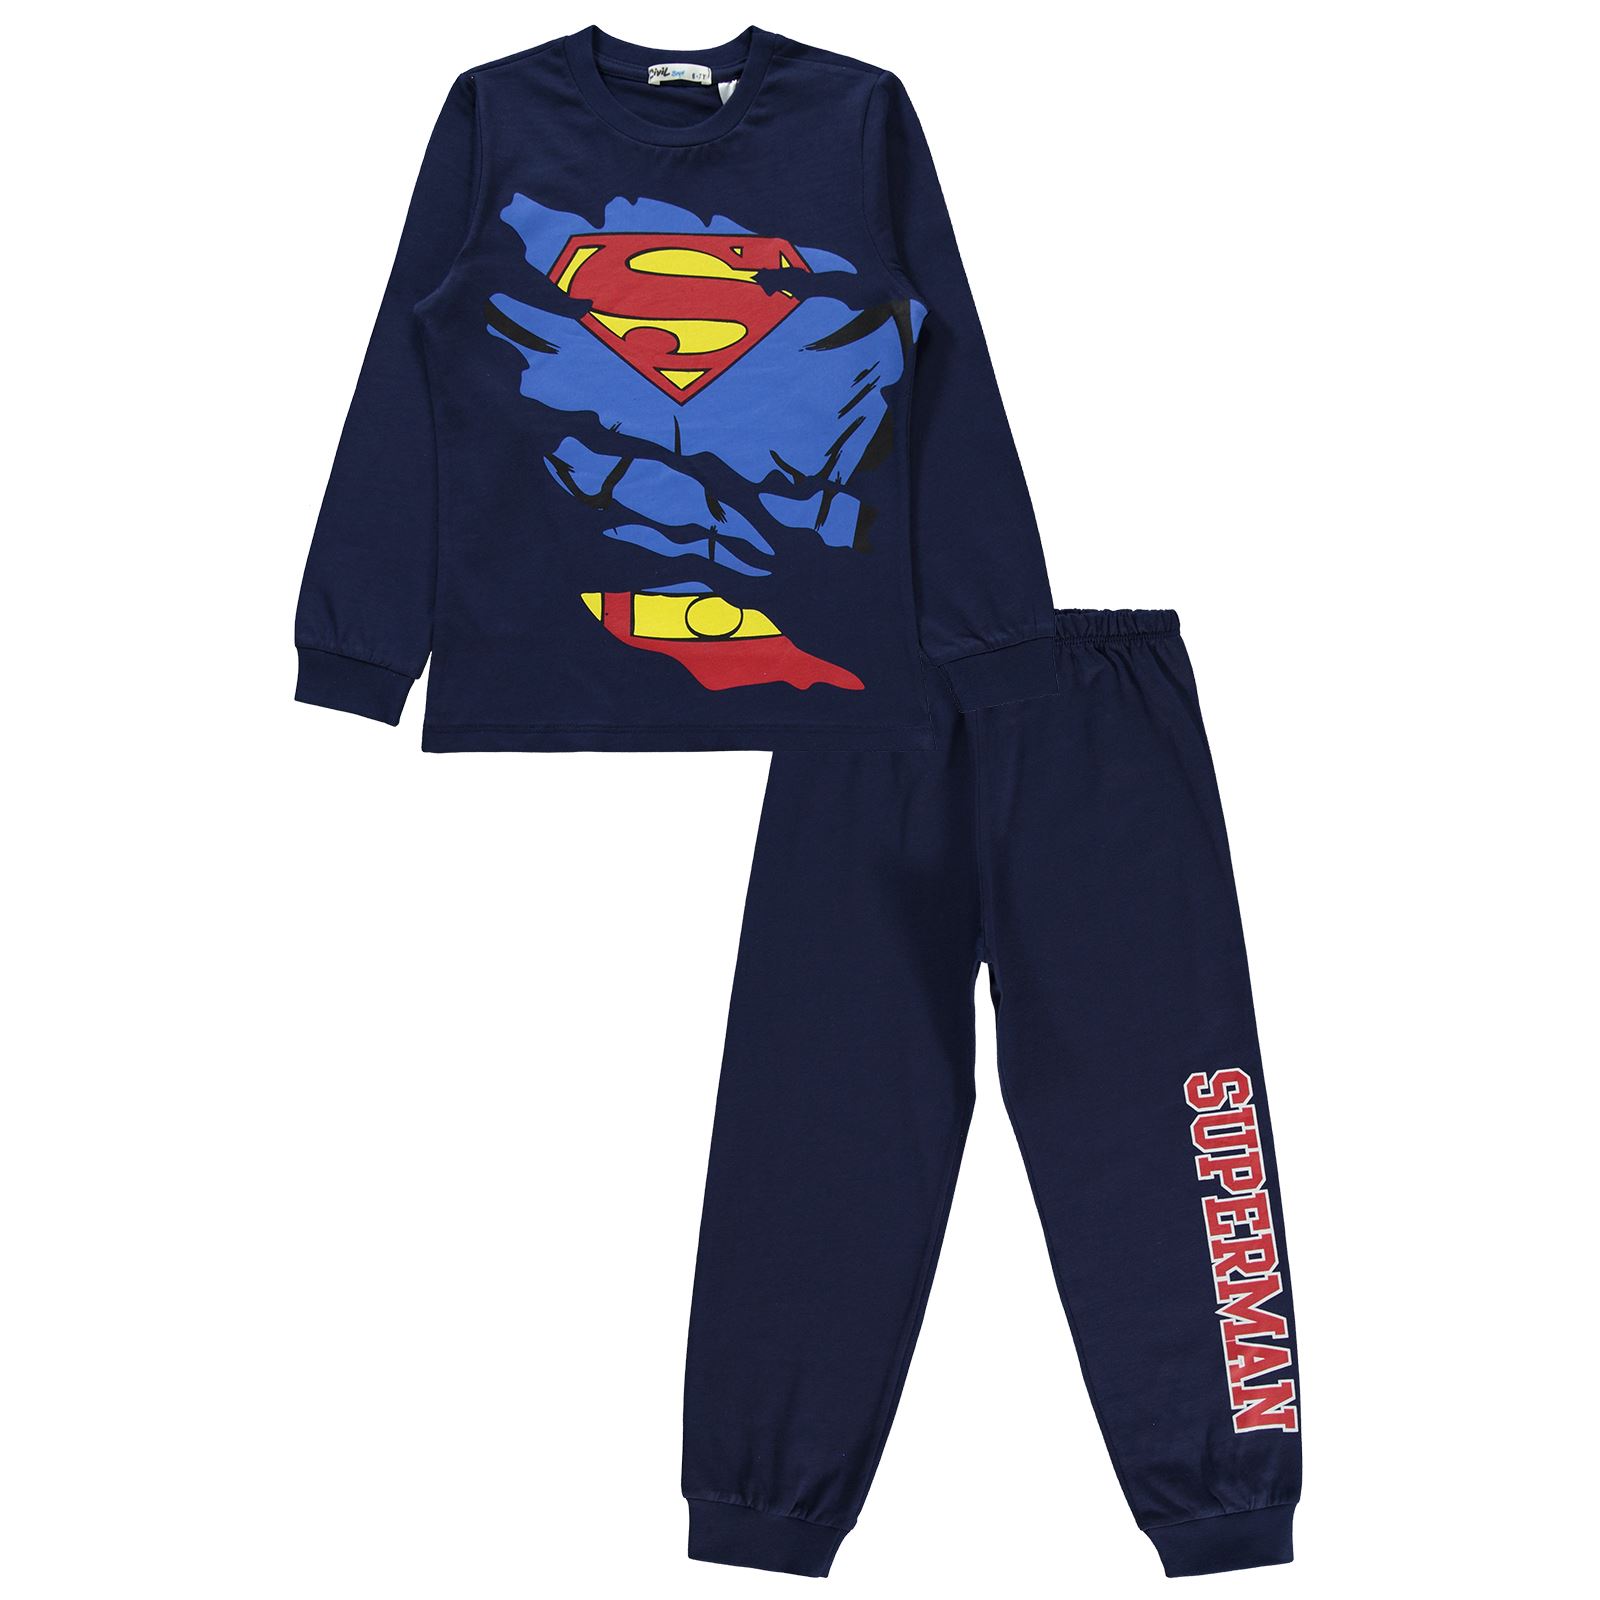 Süperman Erkek Çocuk Pijama Takımı 10-13 Yaş Lacivert